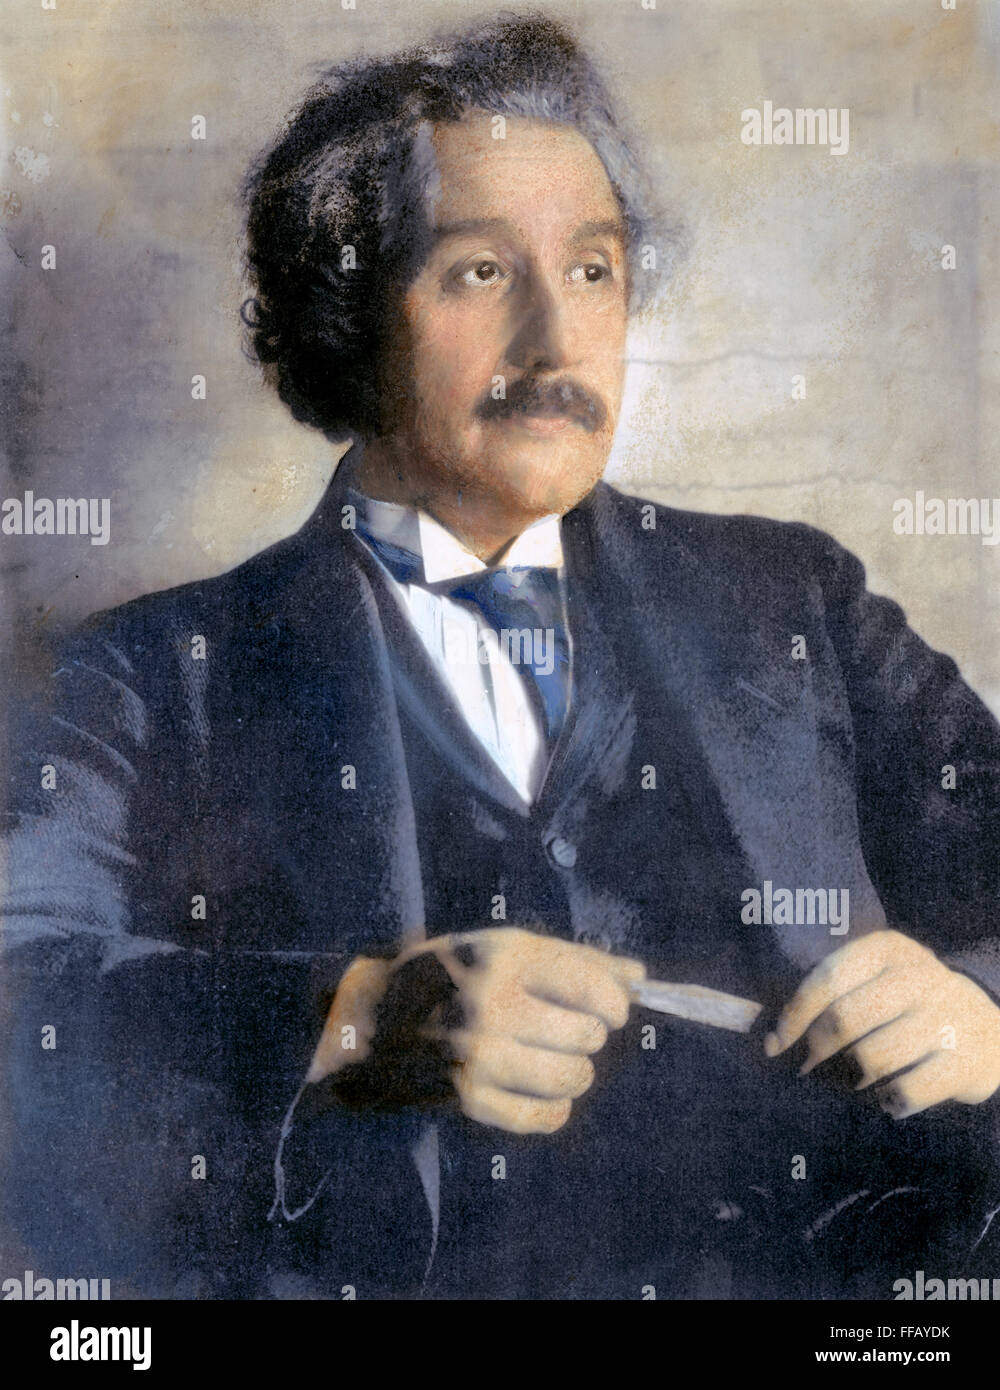 ALBERT EINSTEIN (1879-1955). /nAmerican (deutsch-stämmige) theoretischer Physiker. Öl über ein Foto, 1921, von Ferdinand Schmutzer. Stockfoto